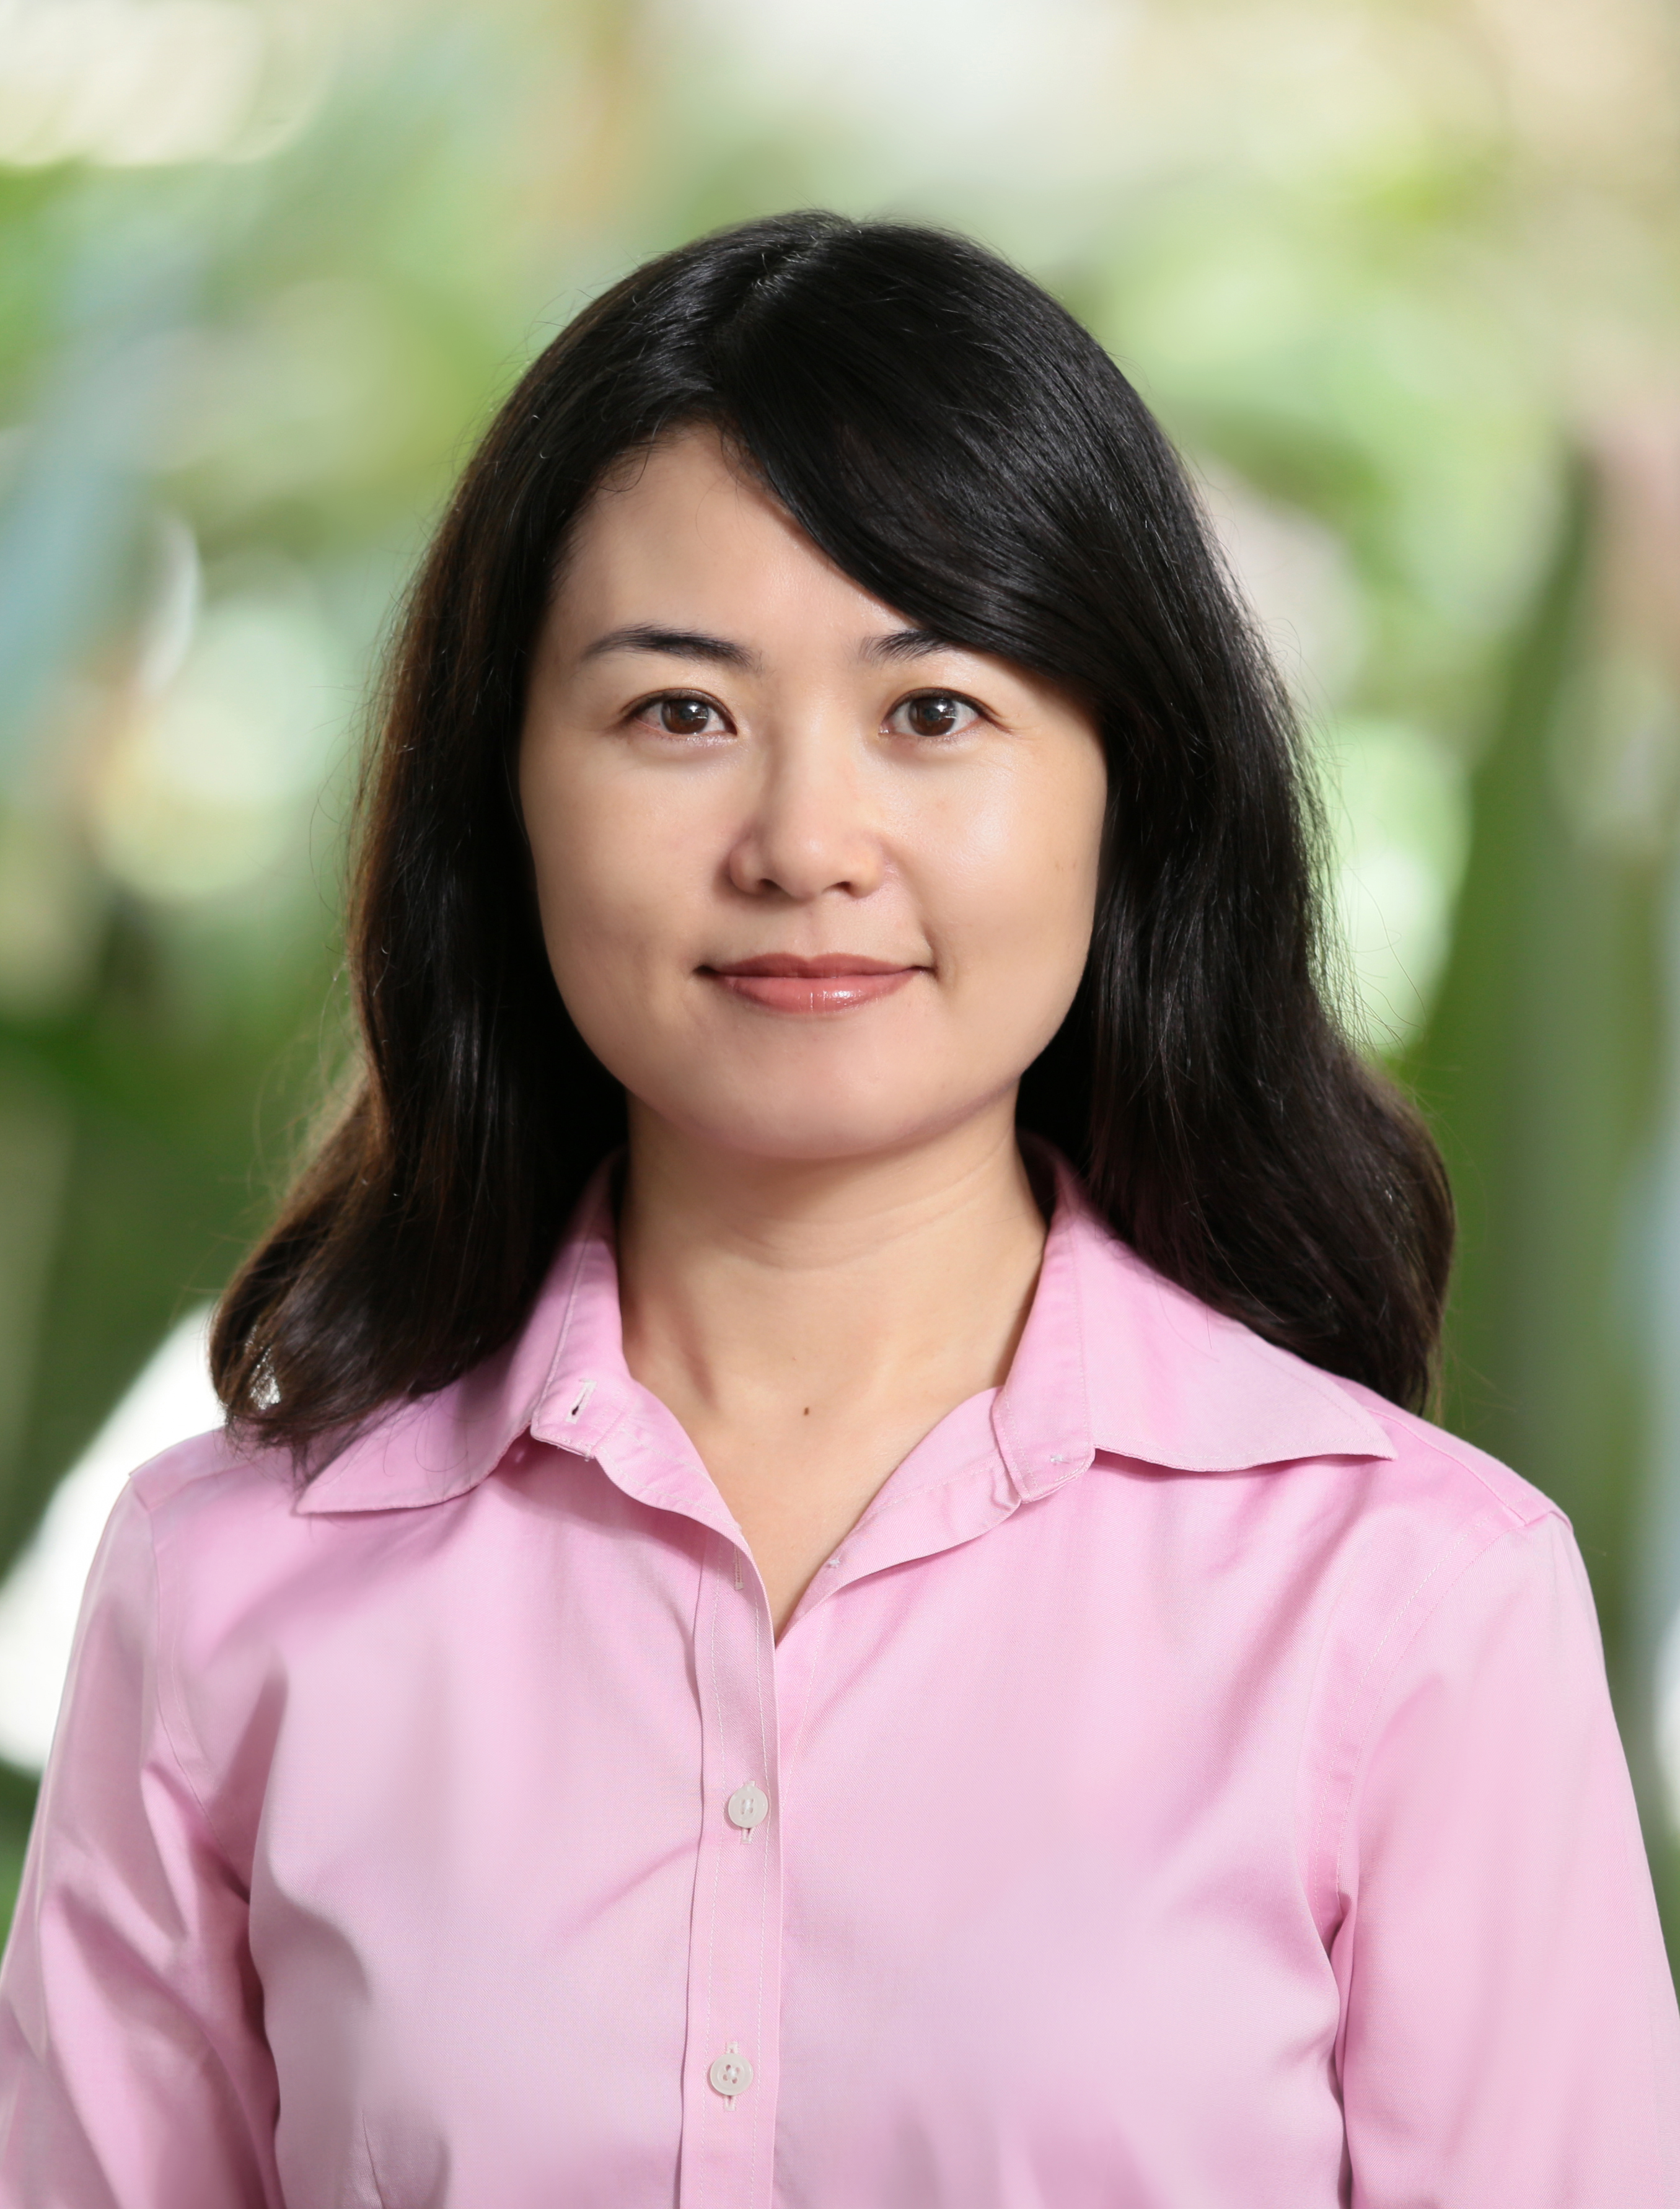 Rong Hai: Assistant Professor, Economics